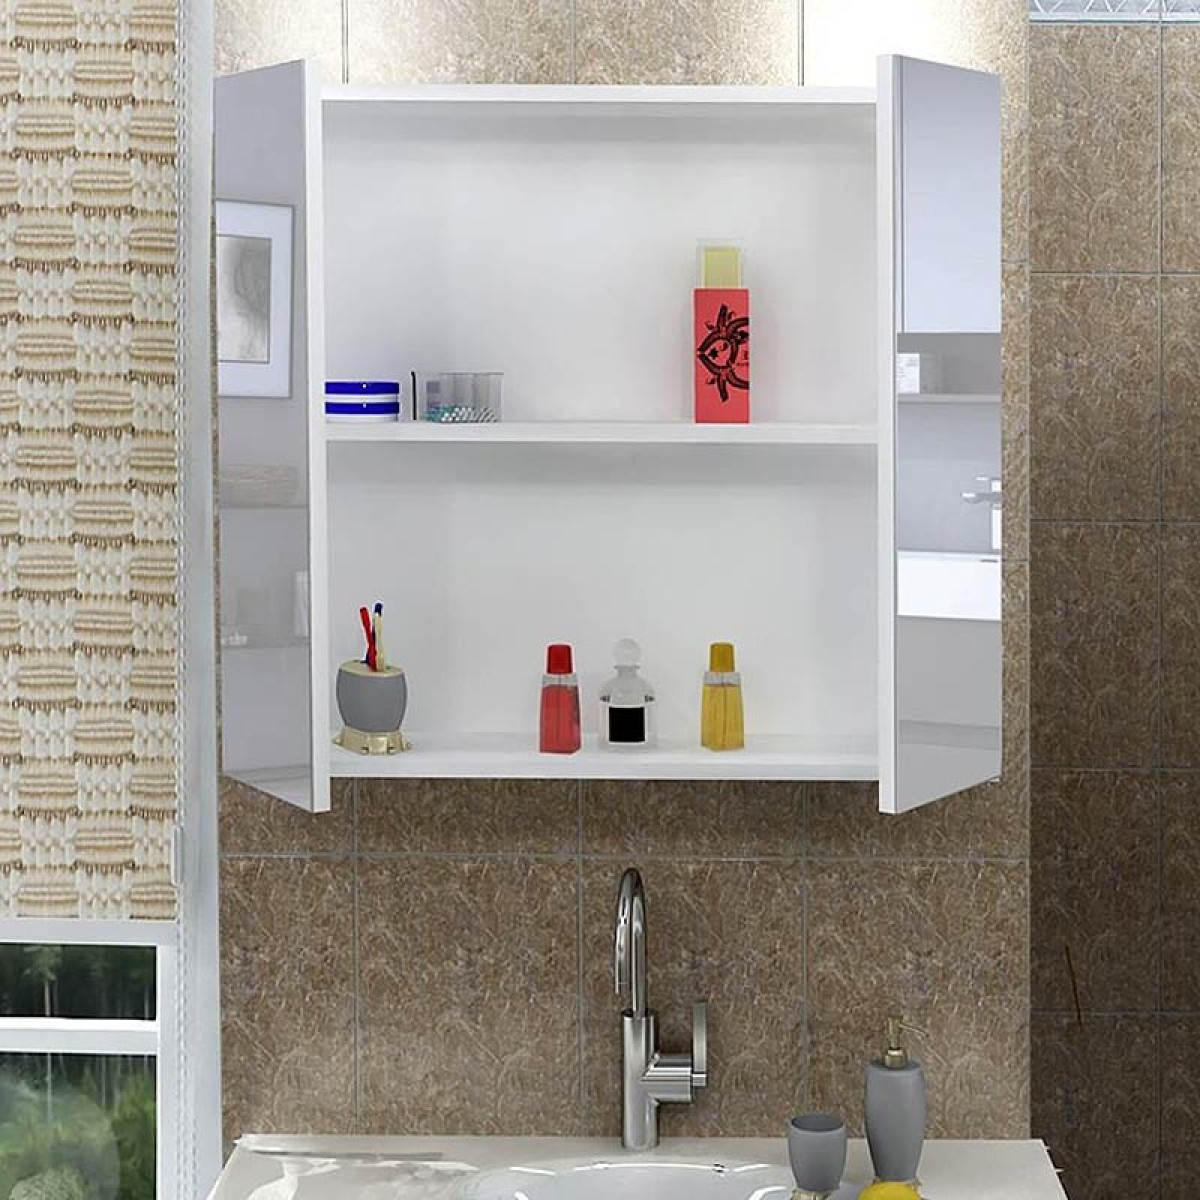 Καθρέπτης μπάνιου με ντουλάπι Nisa από μελαμίνη χρώμα λευκό 60x15x60εκ.